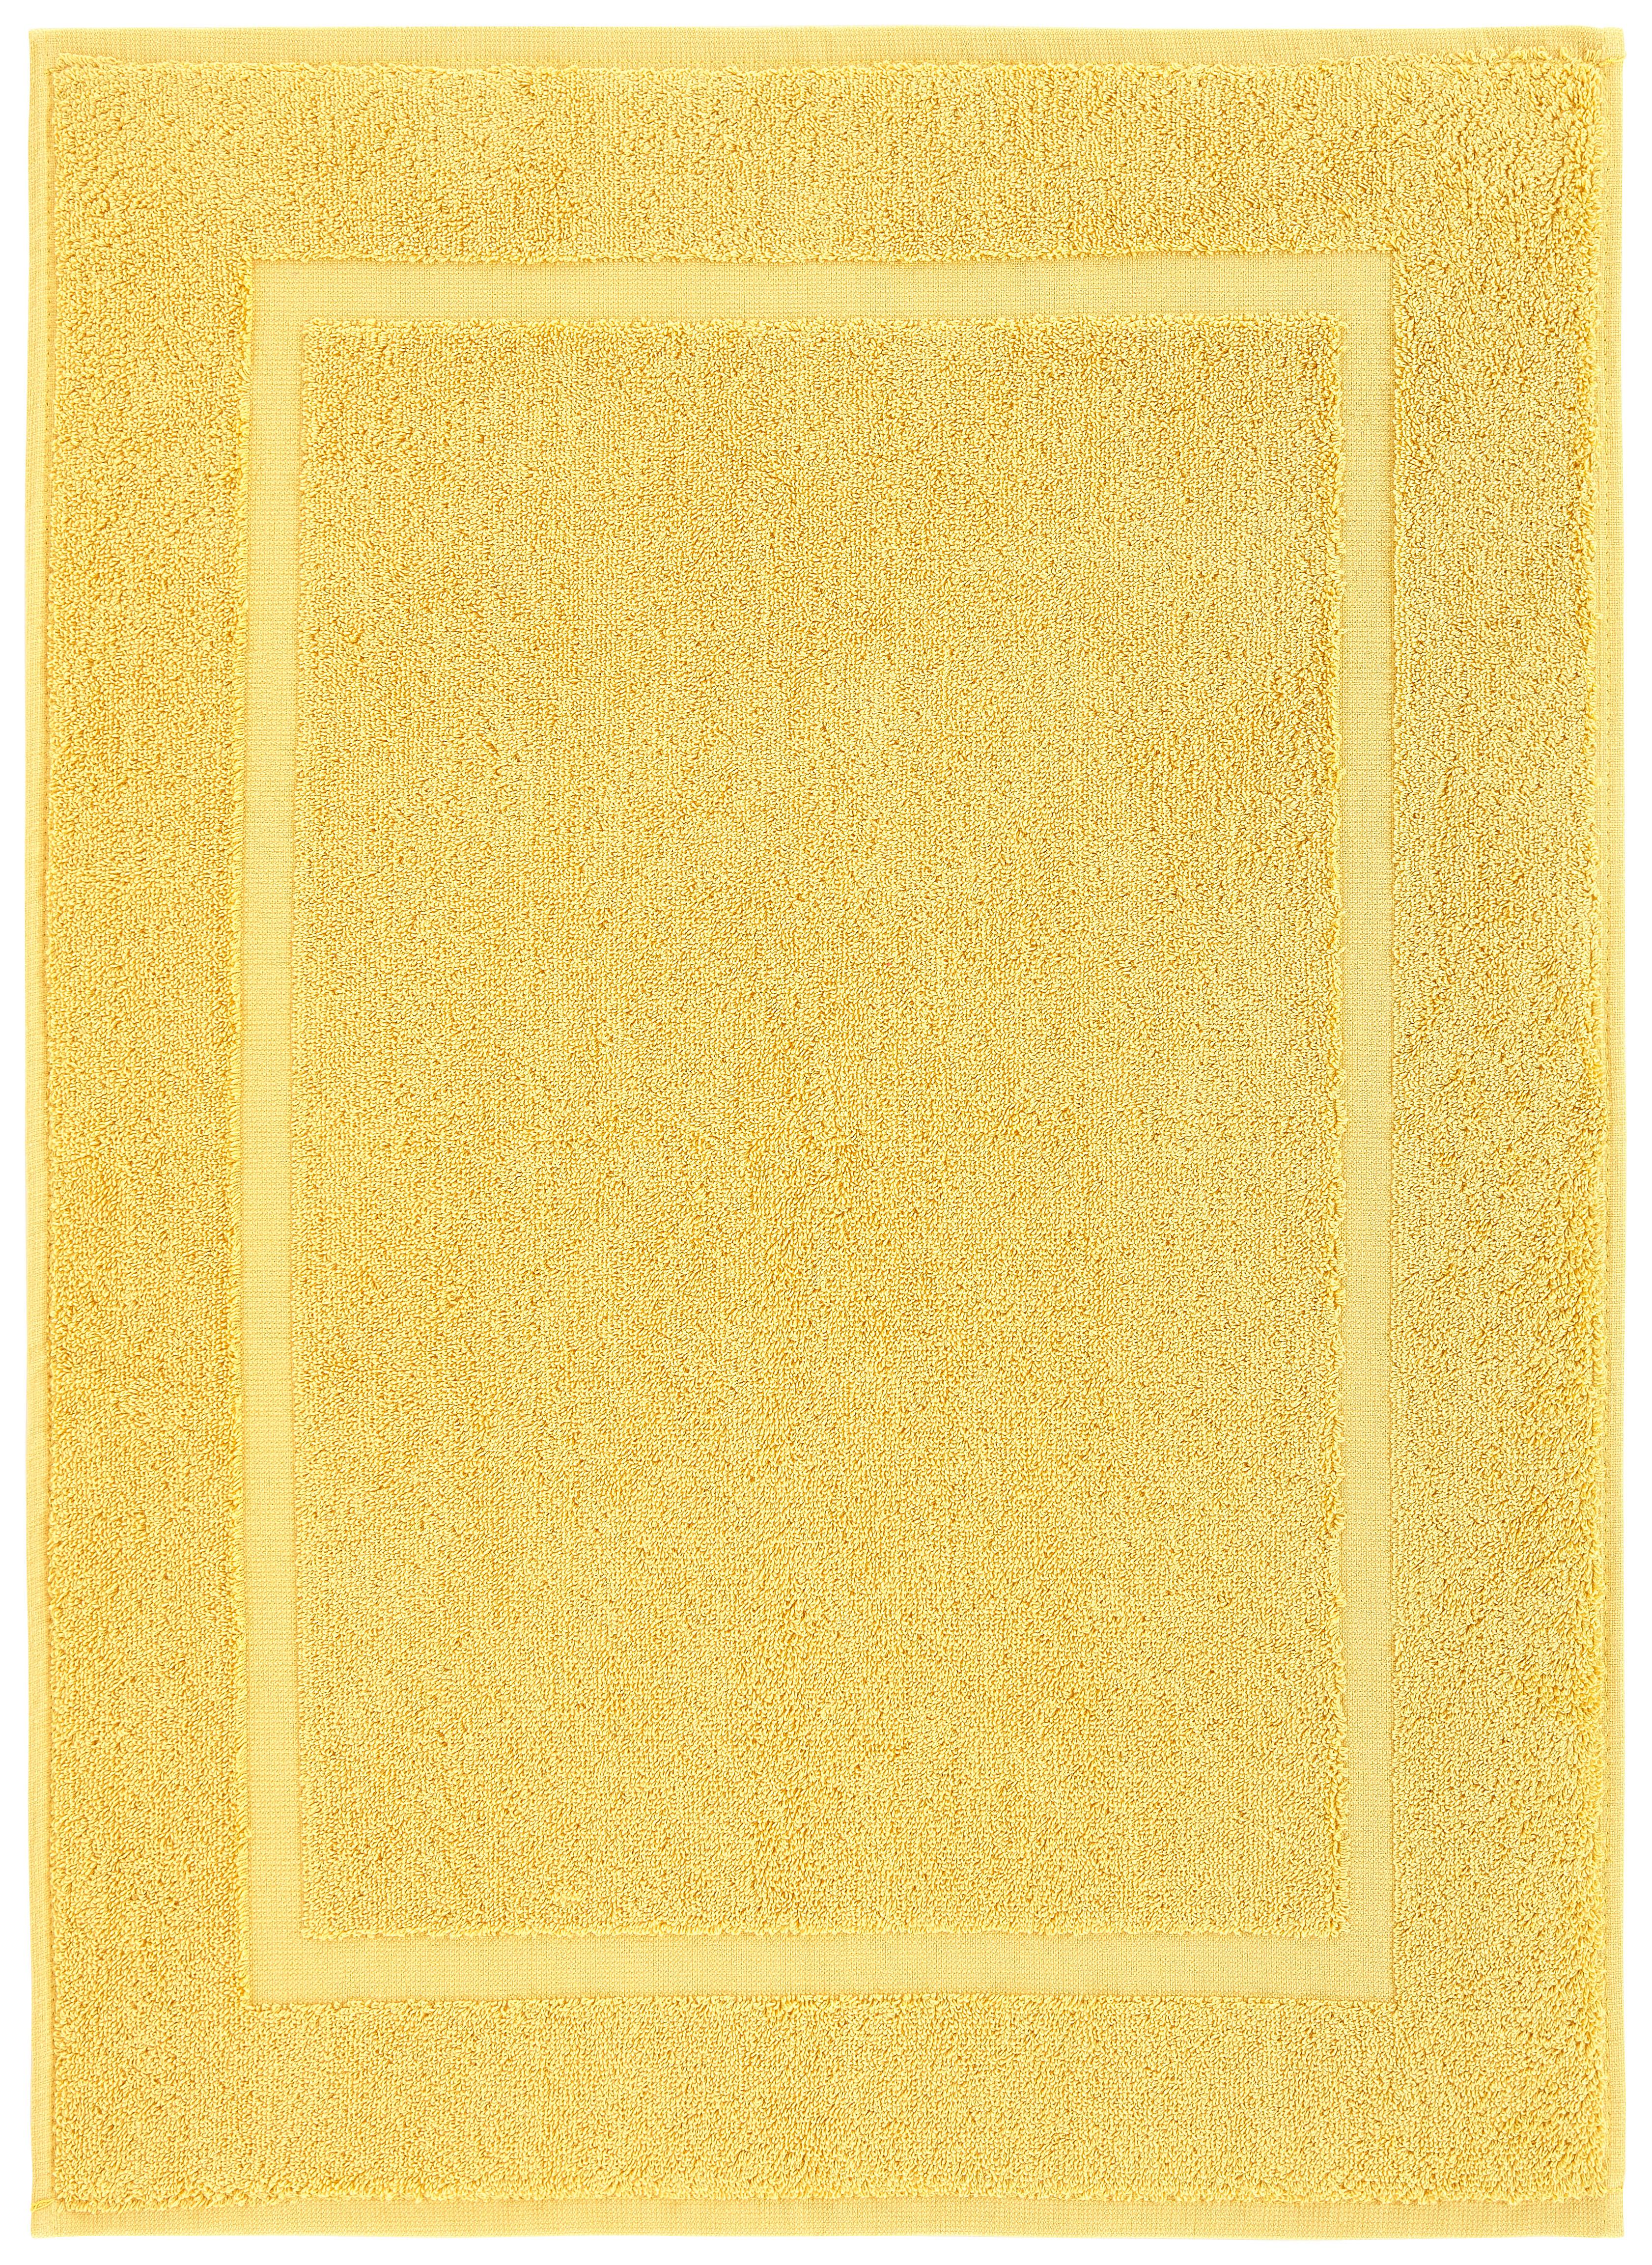 Fürdőszobaszőnyeg Melanie 50/70 - Sárga, Textil (50/70cm) - Modern Living